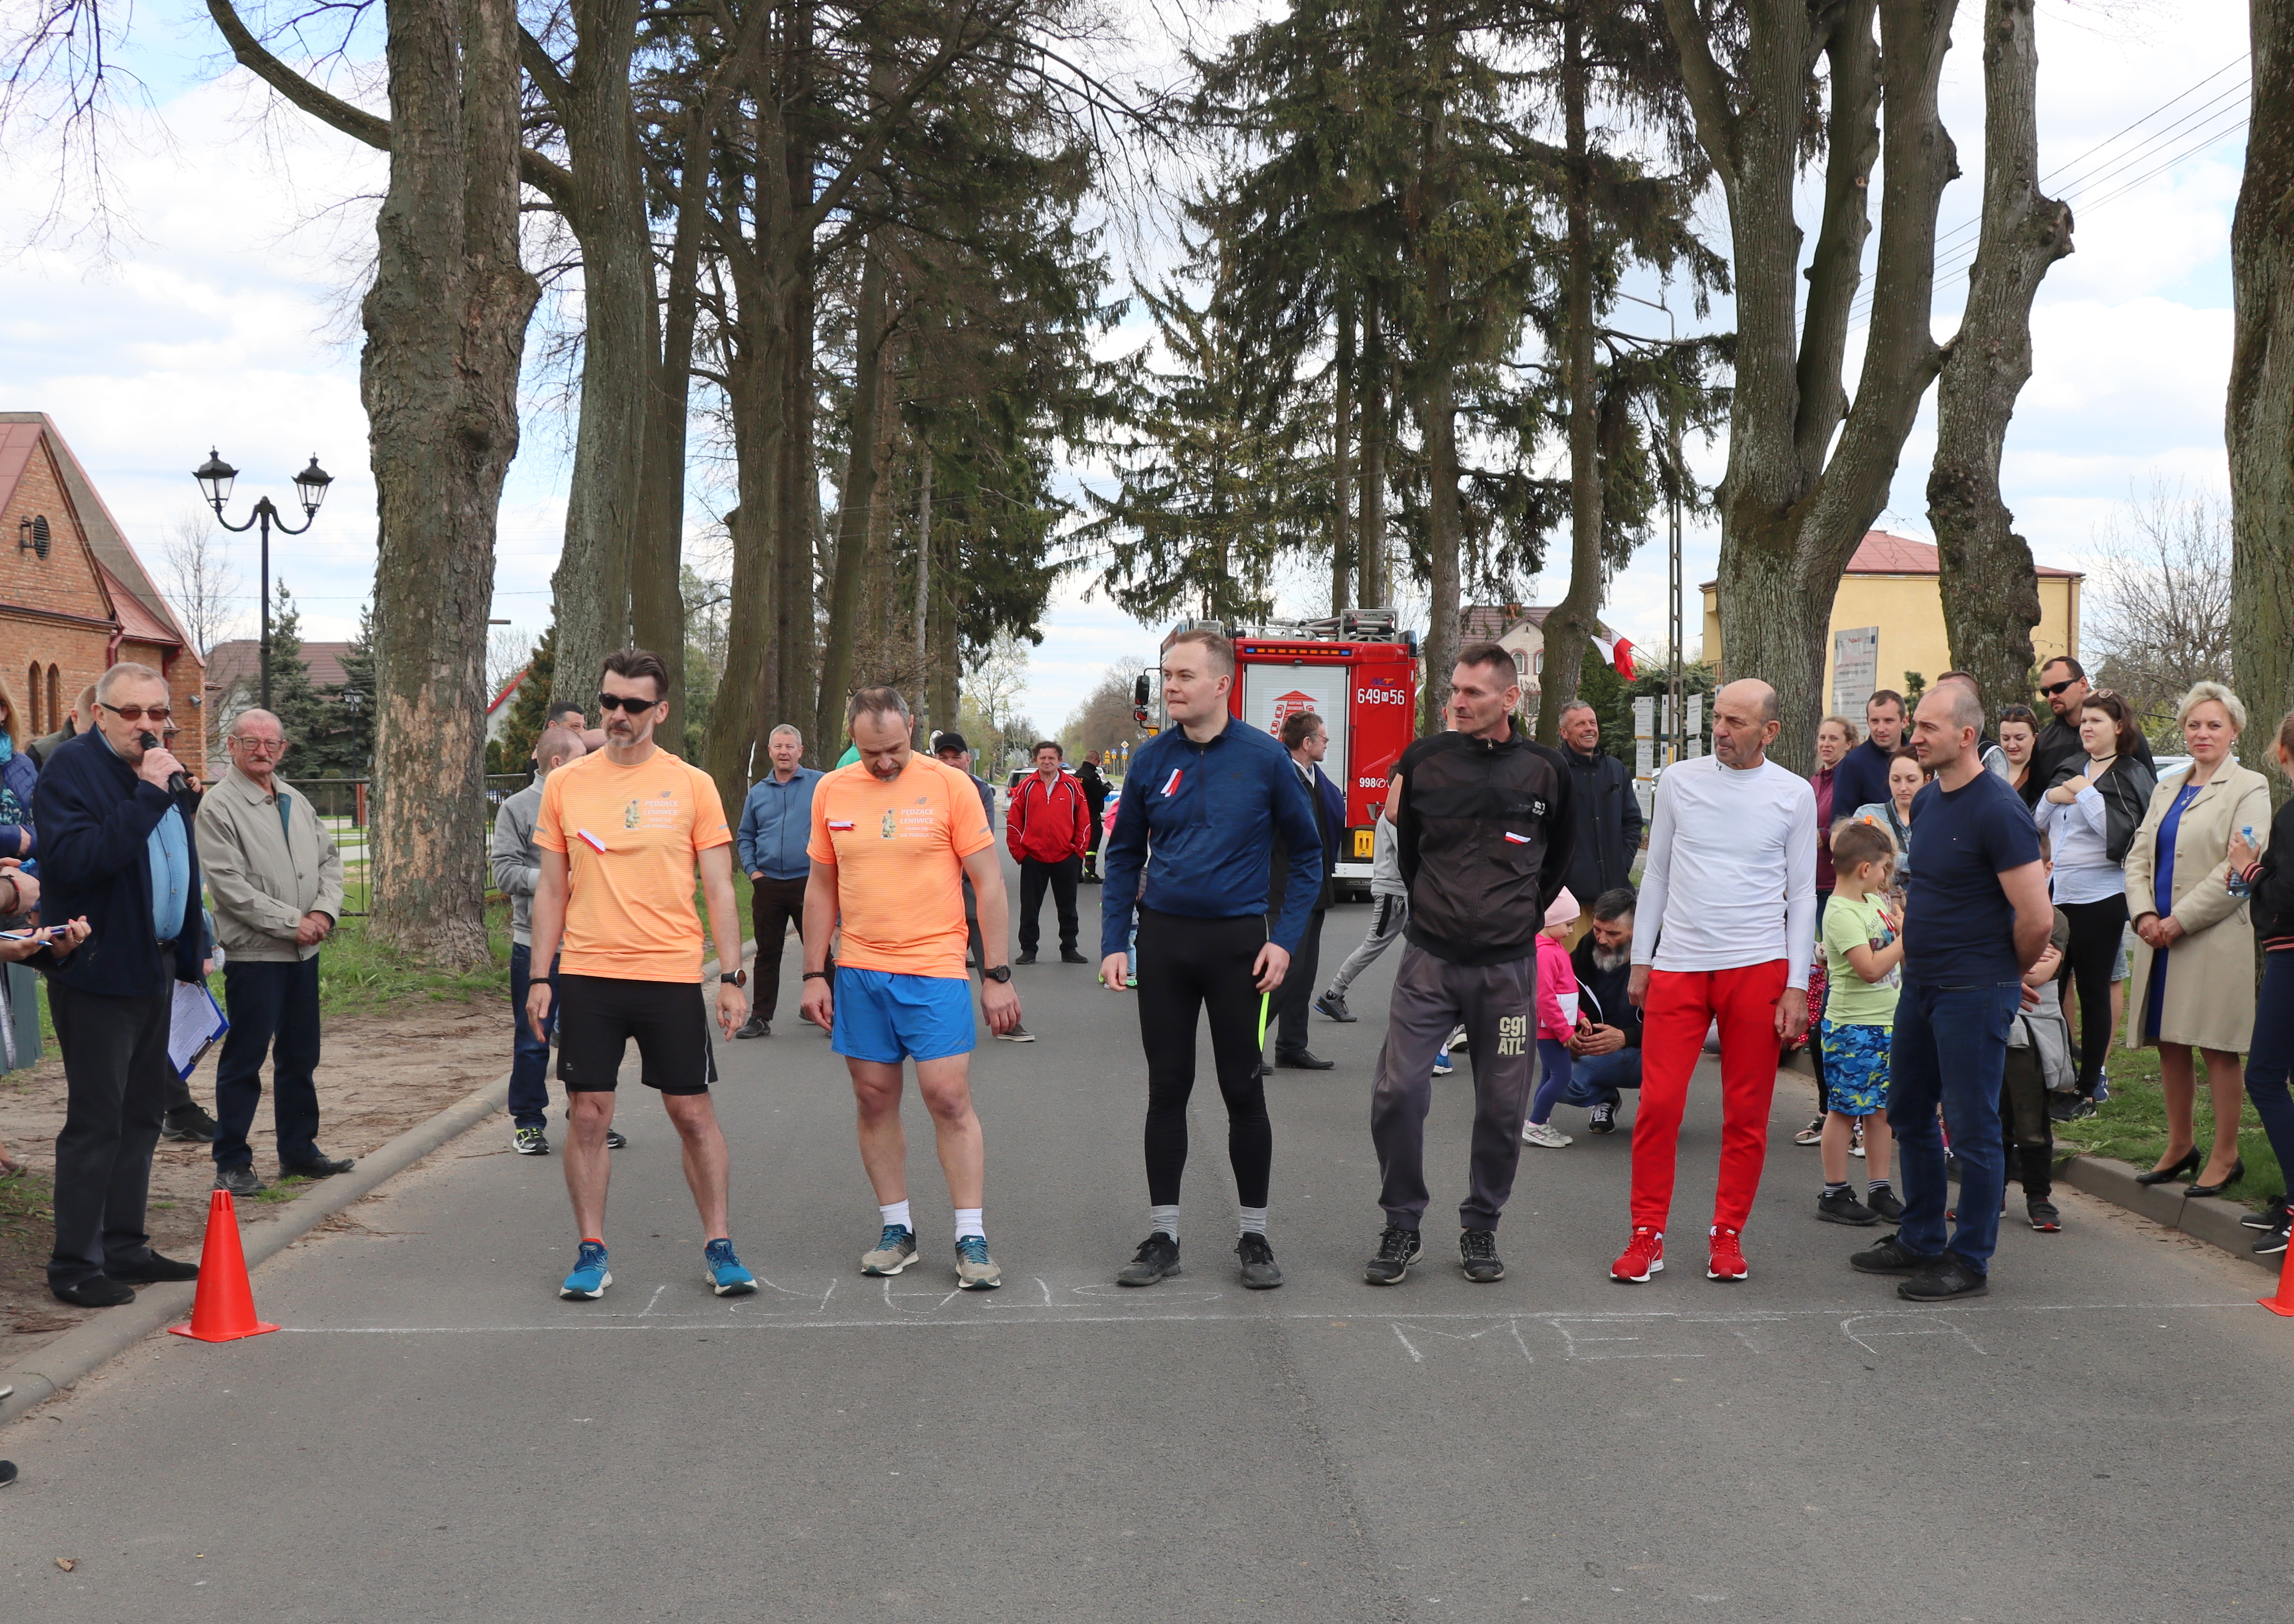 Najstarsza grupa wiekowa mężczyzn (6 osób)uczestnicząca w Biegu na mecie startu. Kibicuje im kolorowy tłum zgromadzony wzdłuż trasy biegu.